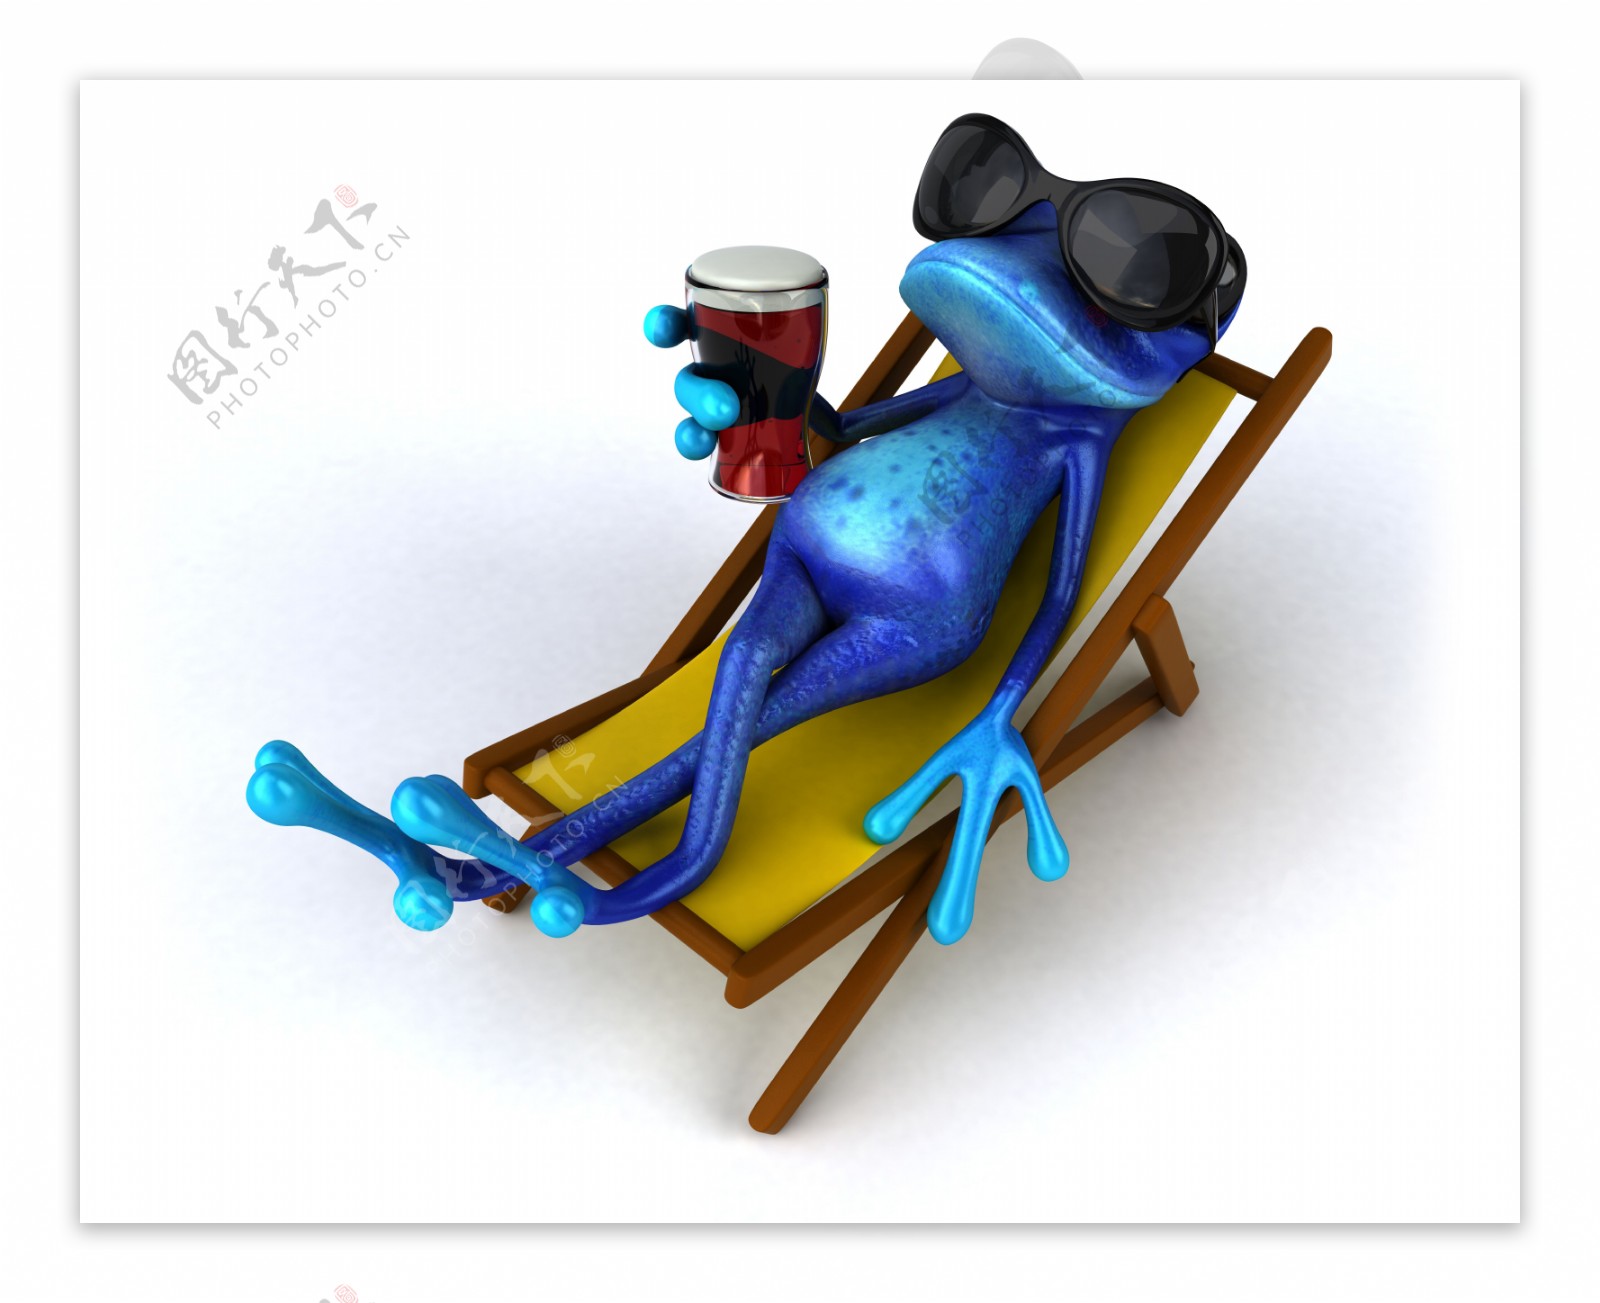 躺在躺椅上的蓝色青蛙图片